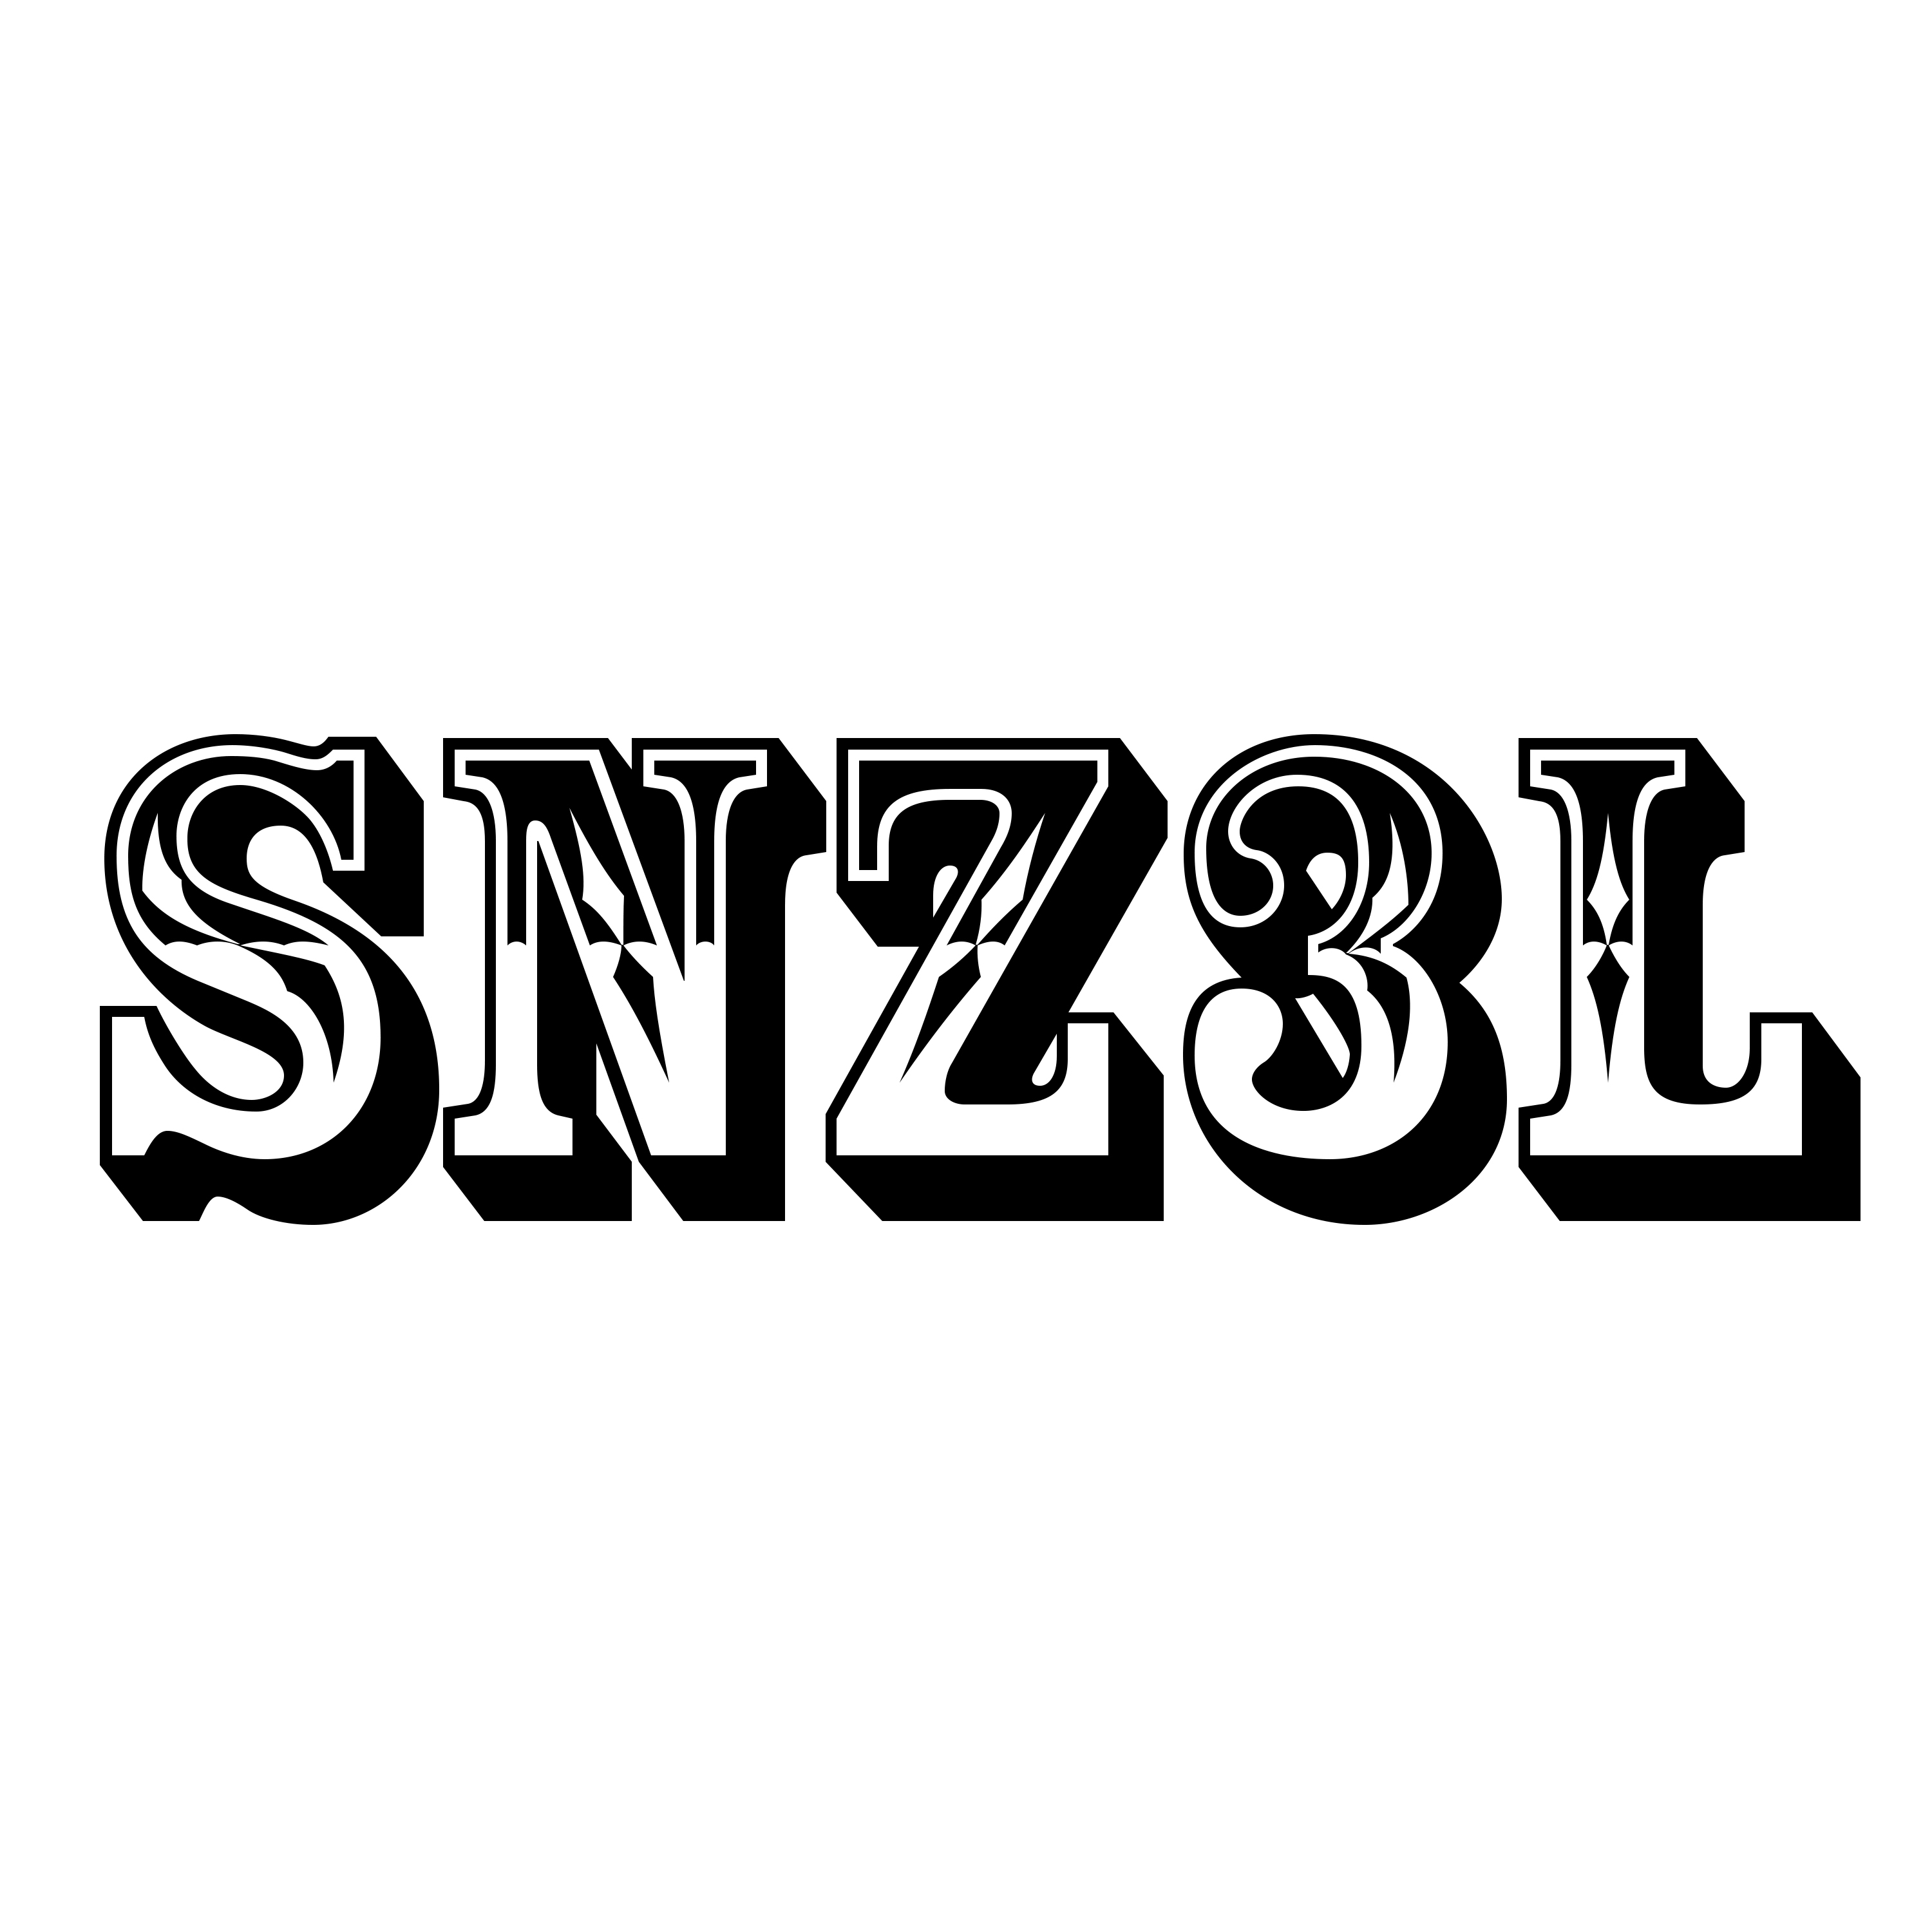 SNZ3l